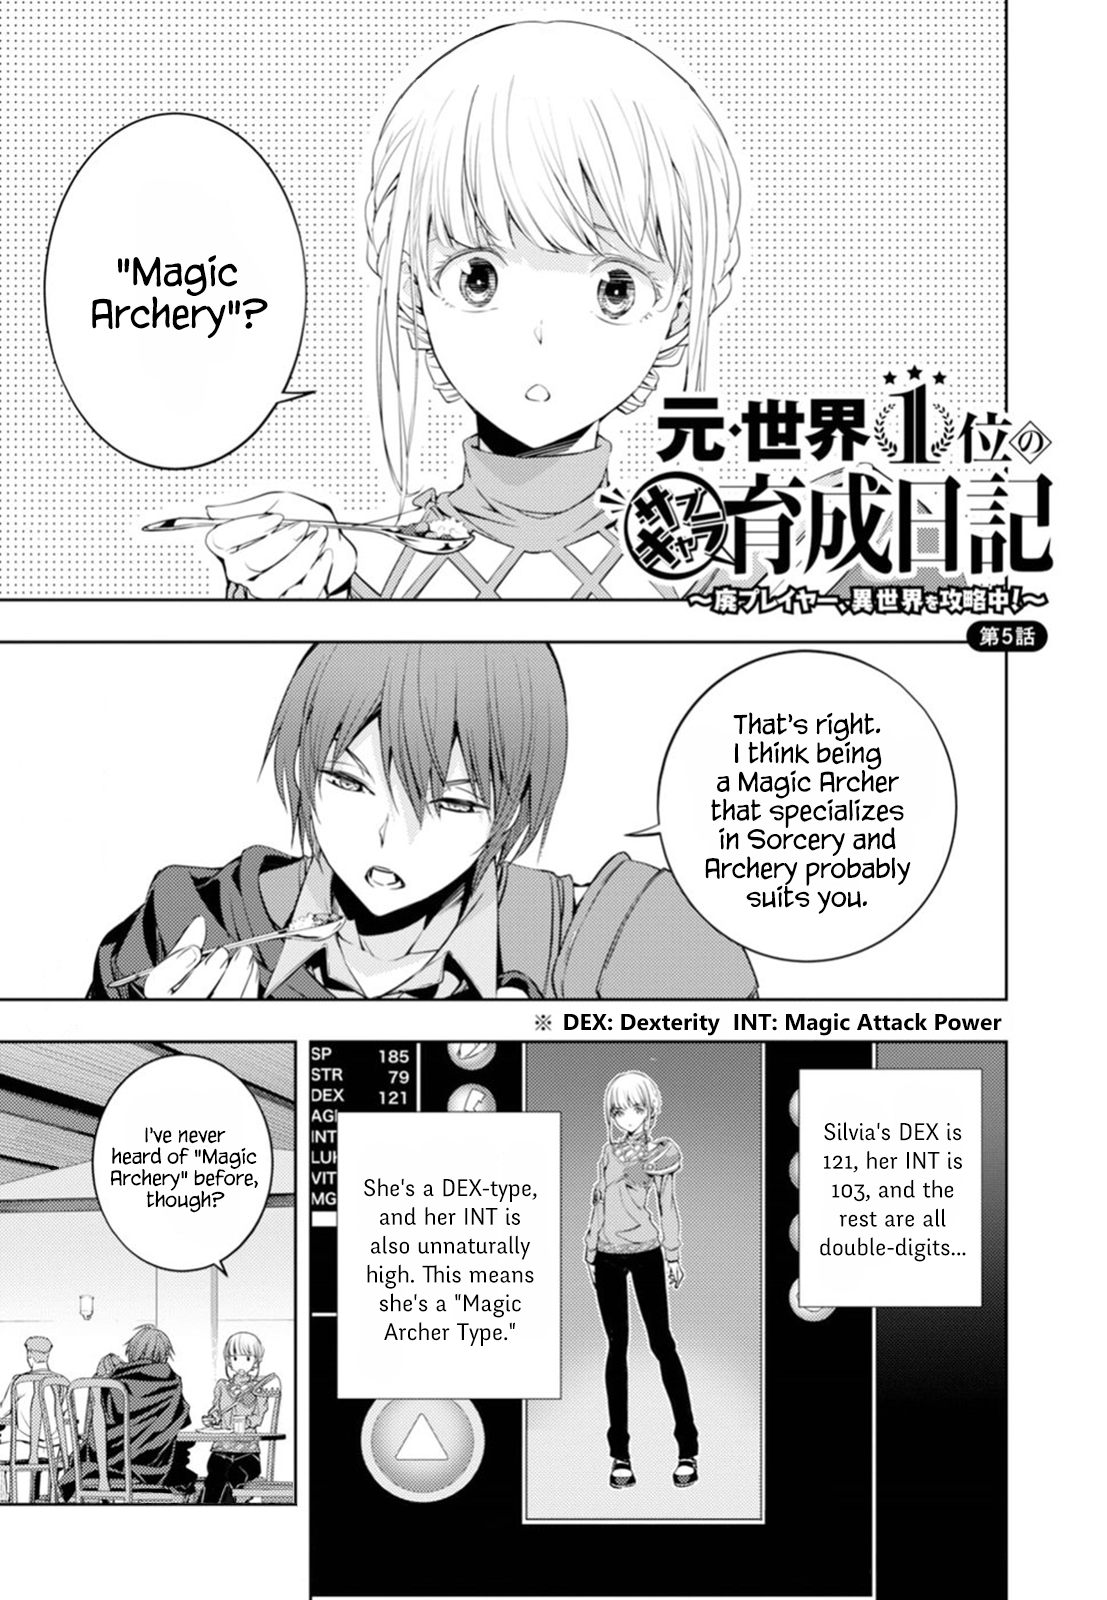 Moto Sekai Ichi'i Subchara Ikusei Nikki: Hai Player, Isekai Wo Kouryakuchuu! - Page 1